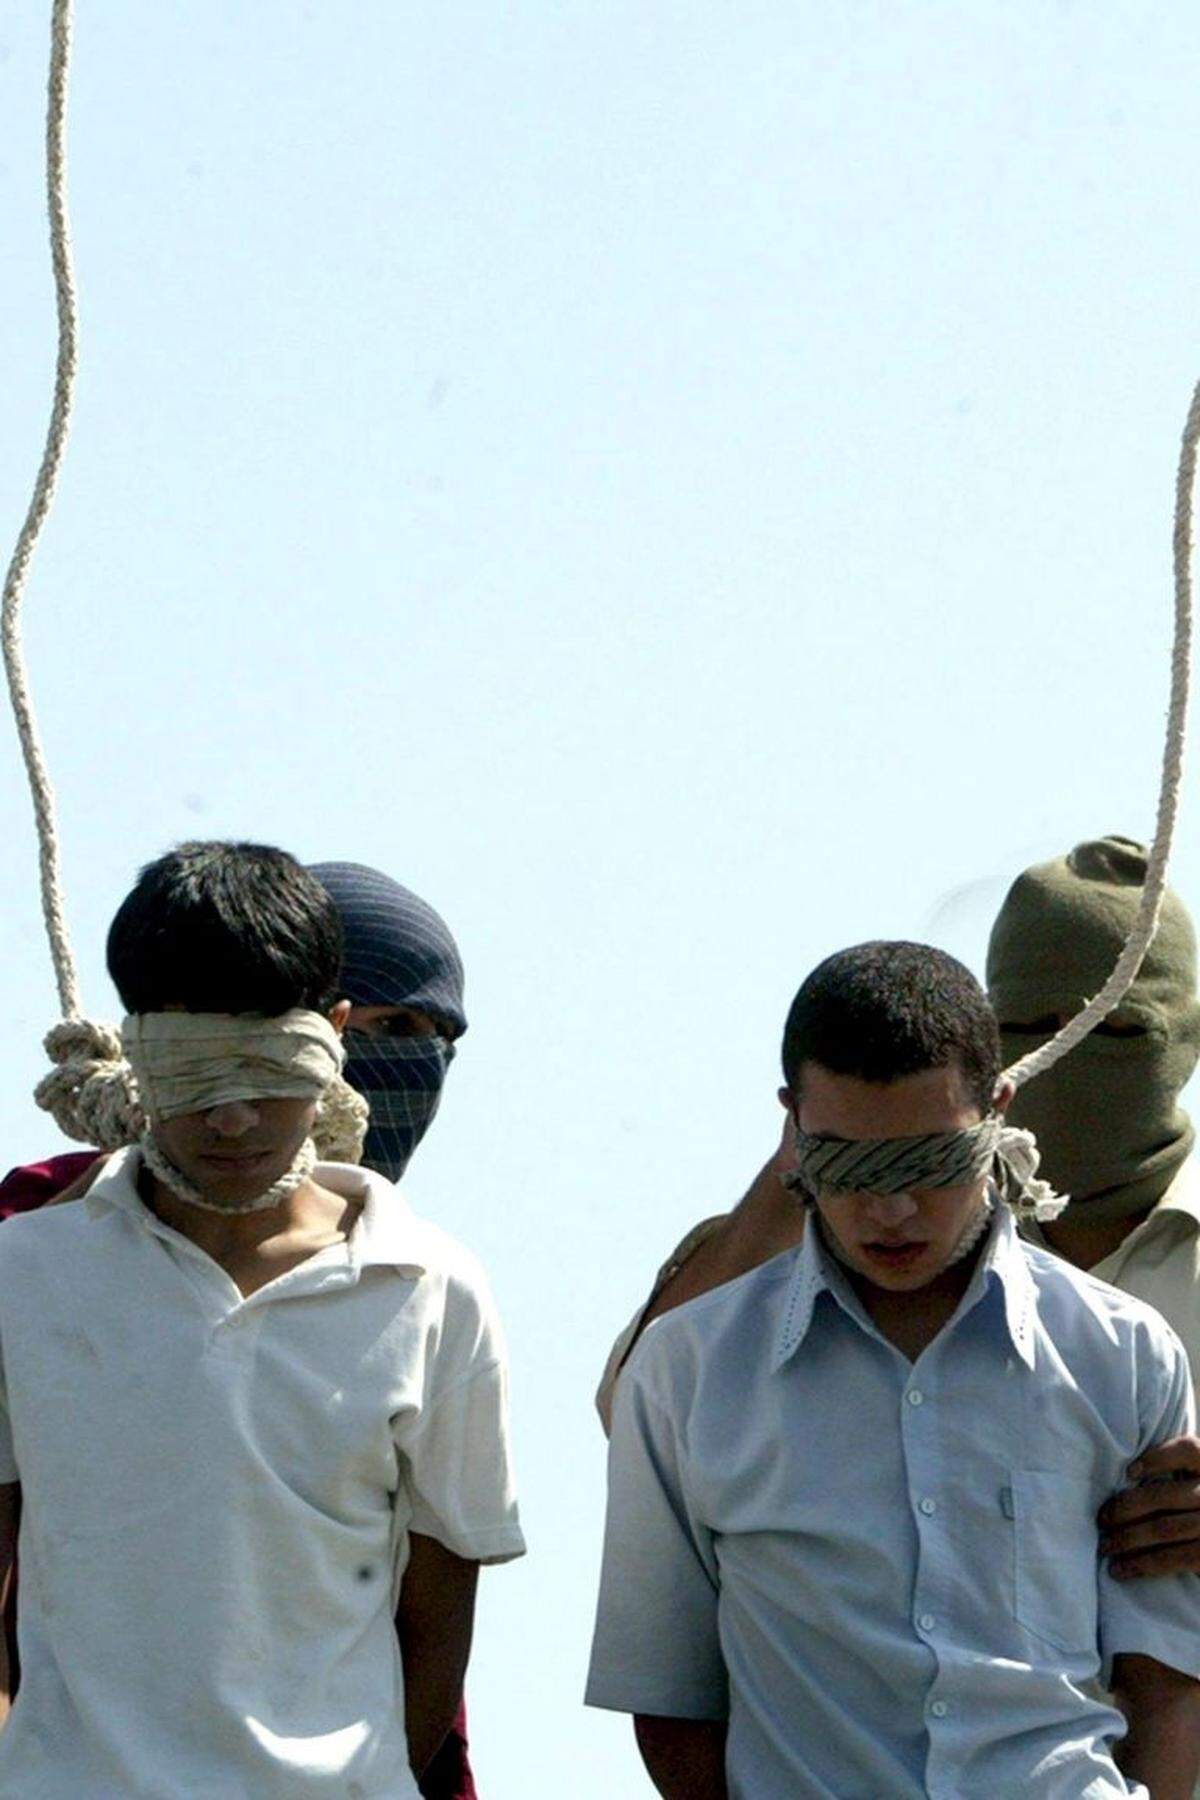 Während Irans neuer Präsident Hassan Rouhani im Westen als Hoffnungsträger gesehen wird, ist die Anzahl der Todesstrafen im Iran in seiner Amtszeit massiv angestiegen. Sind 2012 noch 79 Personen hingerichtet worden, so starben 2013 mehr als 369 durch den Strang.